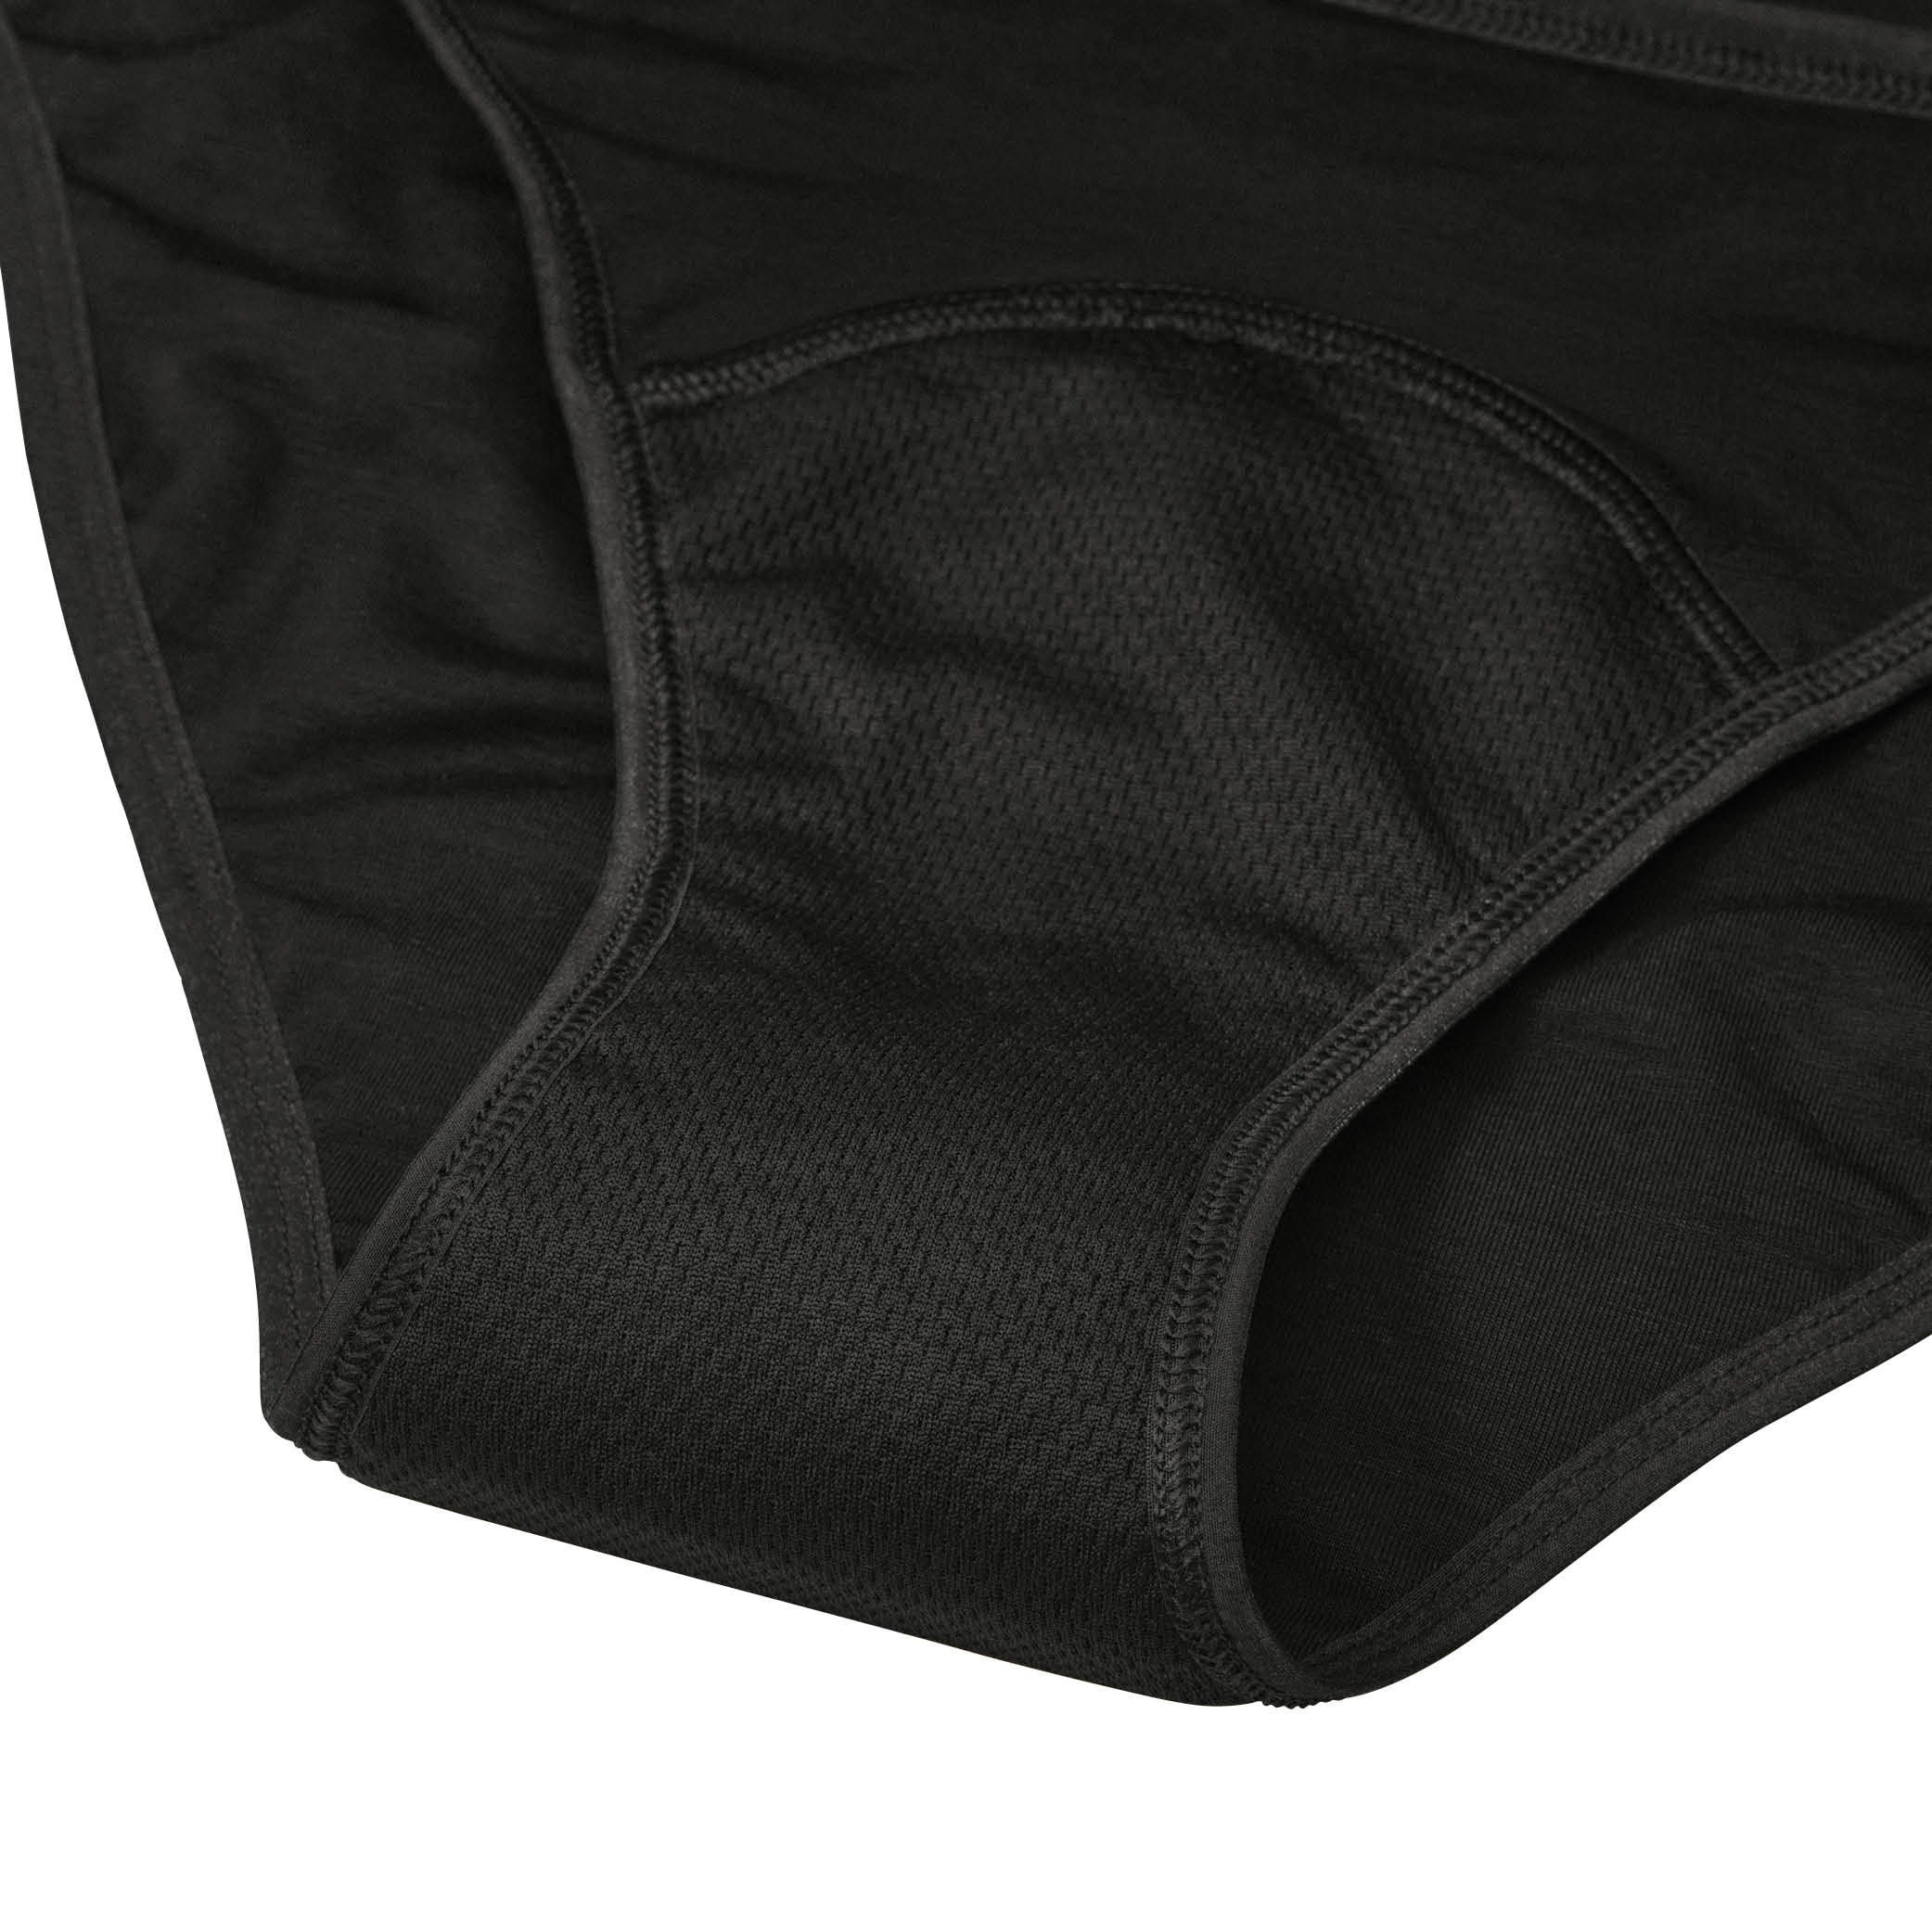 Period underwear svart storlek XL